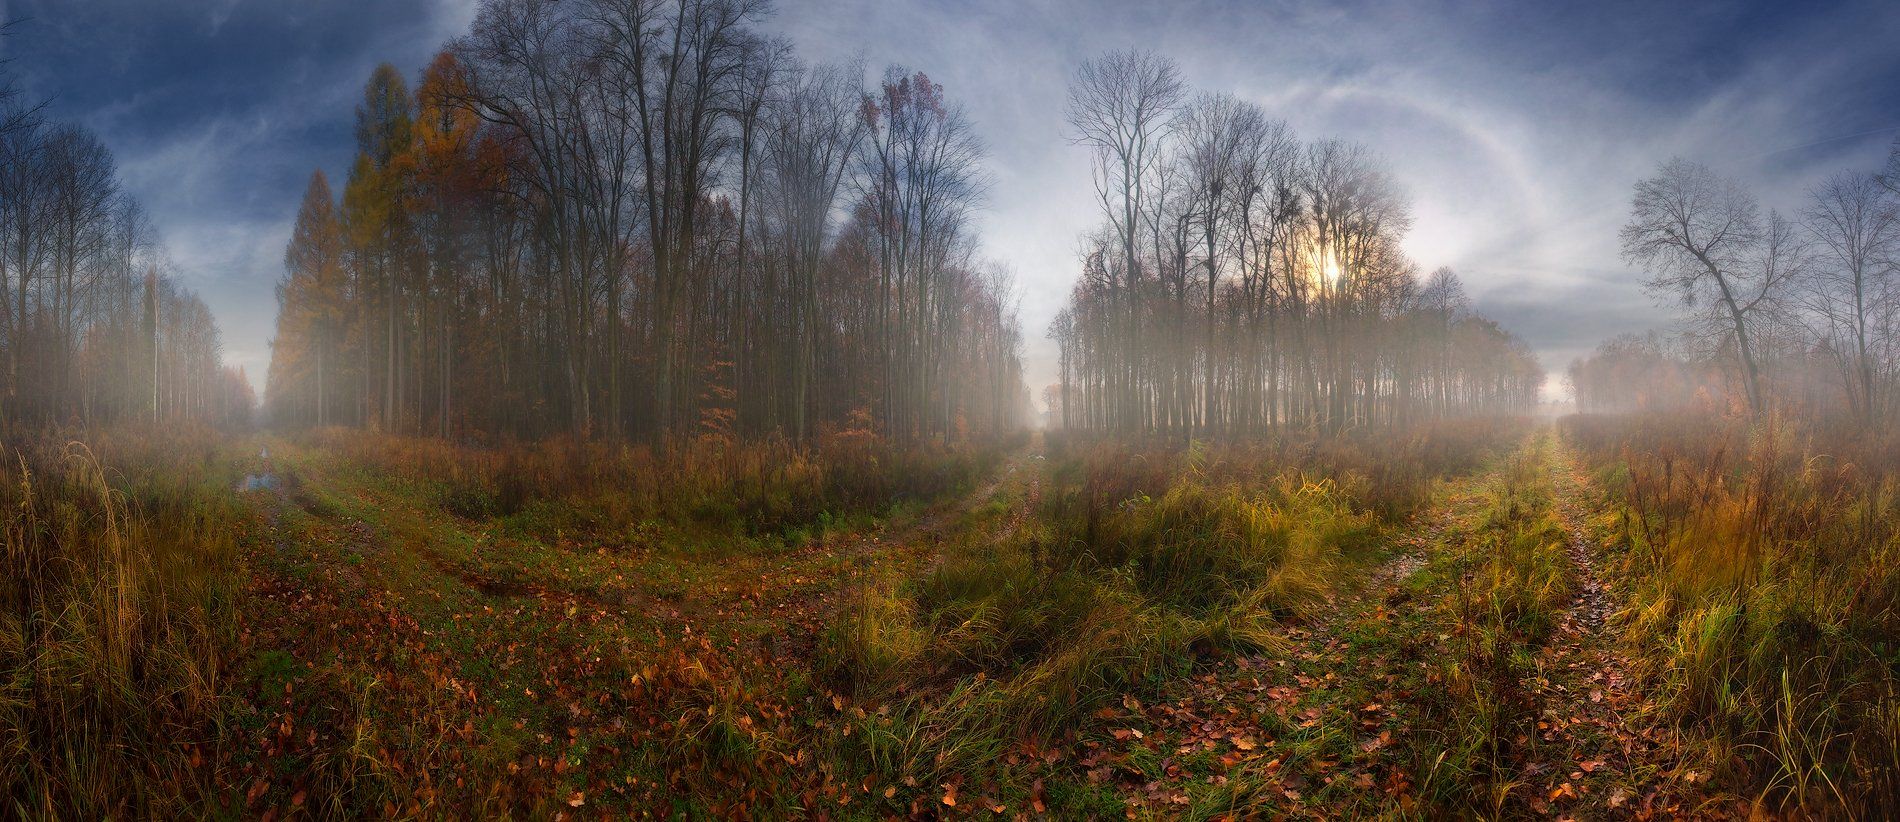 осень, ноябрь, лес, утро, дороги, перекресток, солнце, туман, гало, Владимир